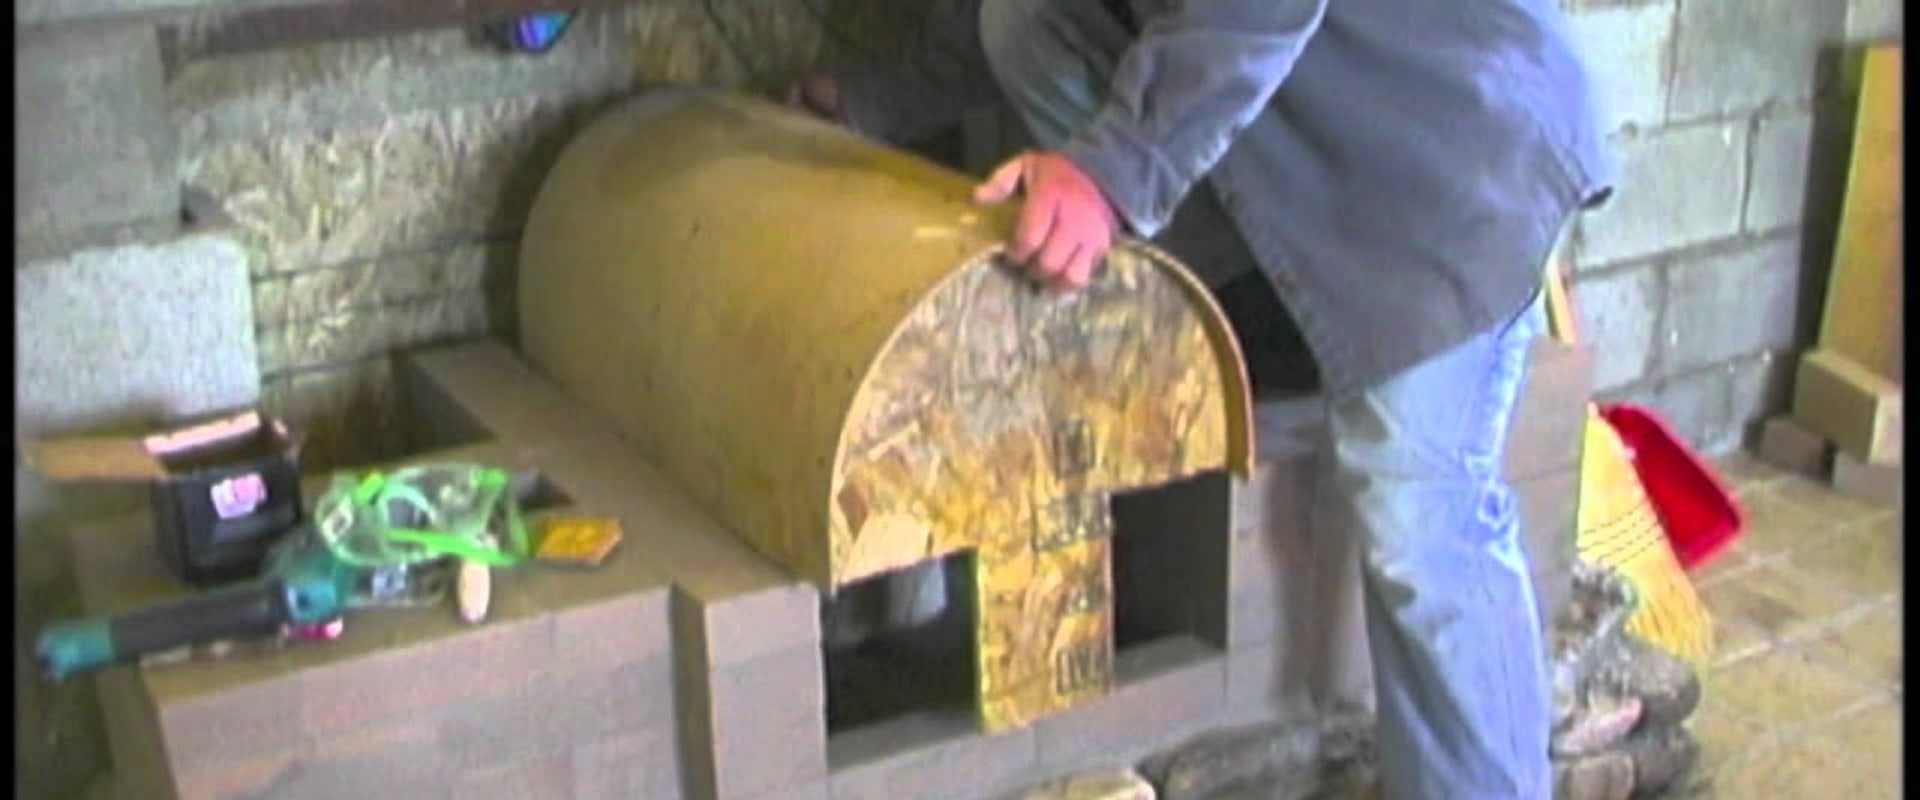 How to build masonry heater?